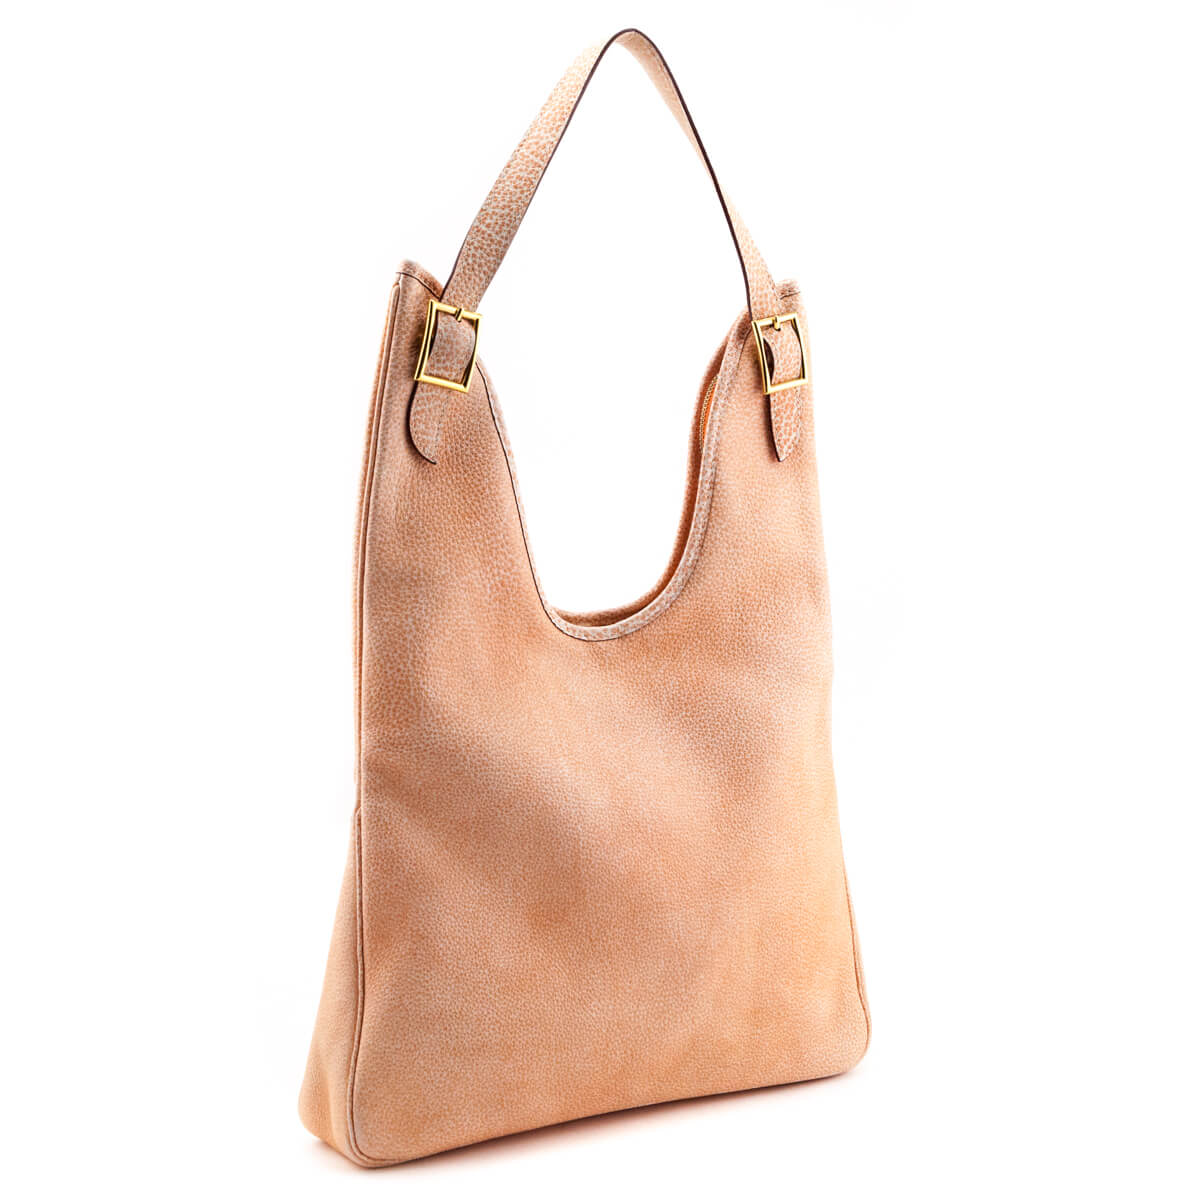 Handbags - Authentic Designer Handbags - Love that Bag etc 